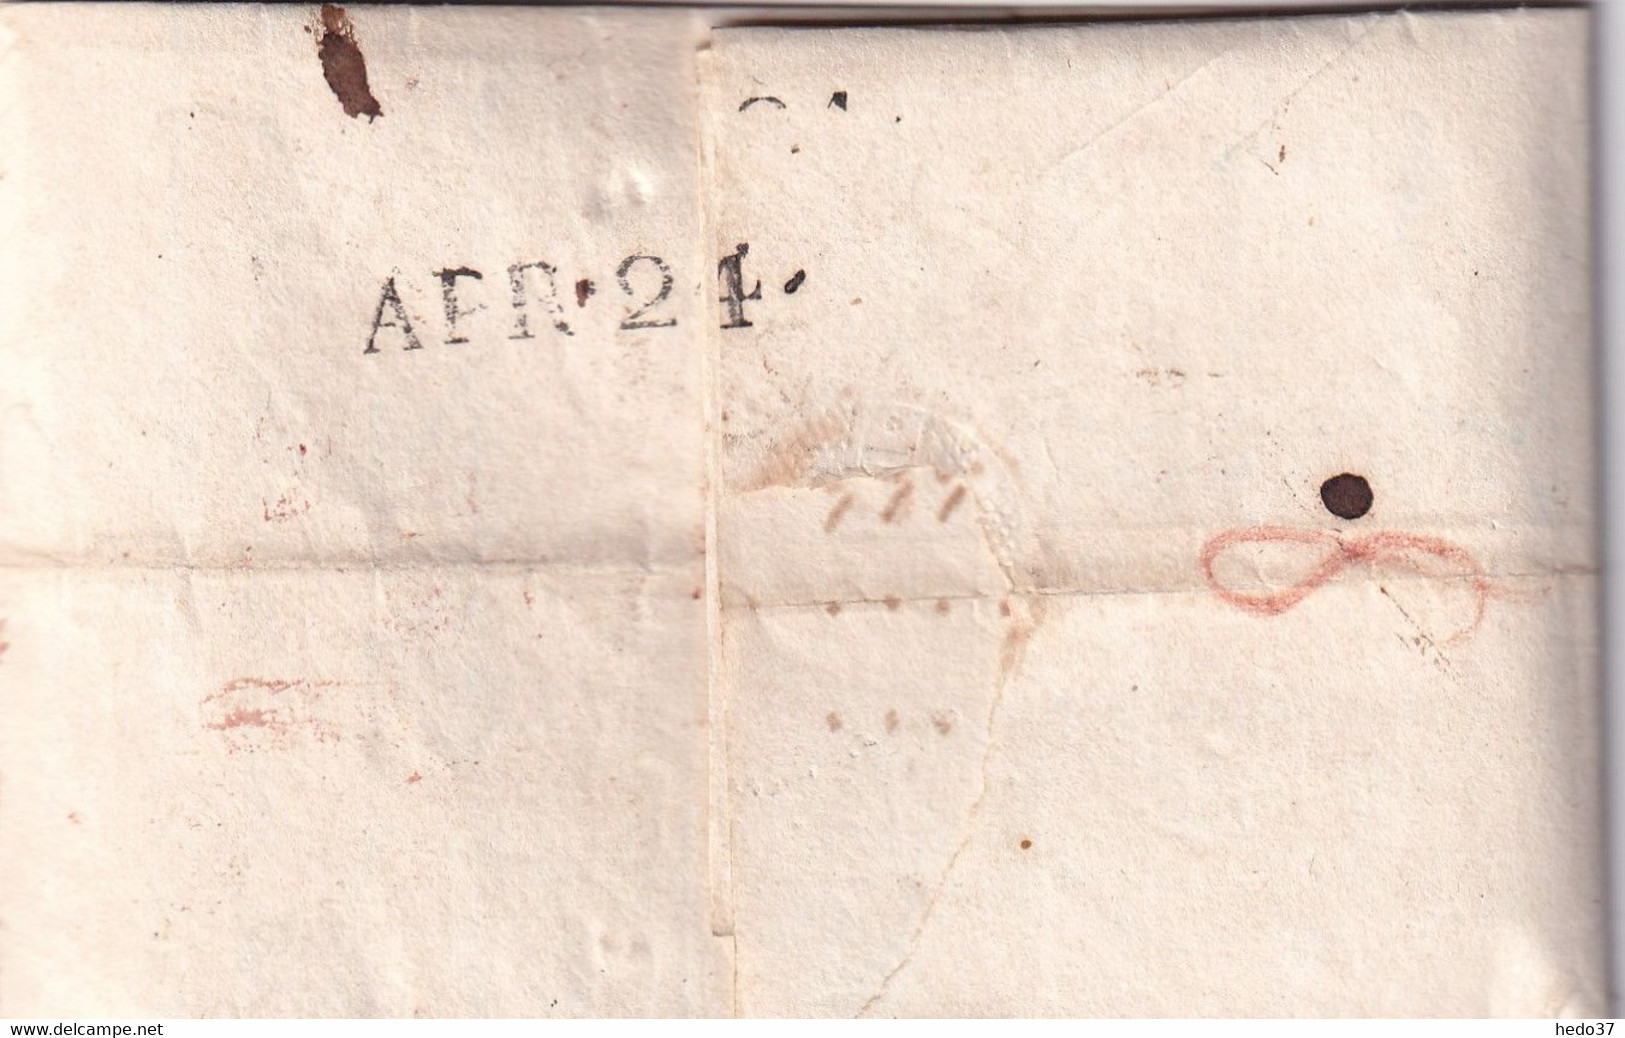 Suisse Marque Postale - St GALLEN /16 April 1822 - ...-1845 Prefilatelia